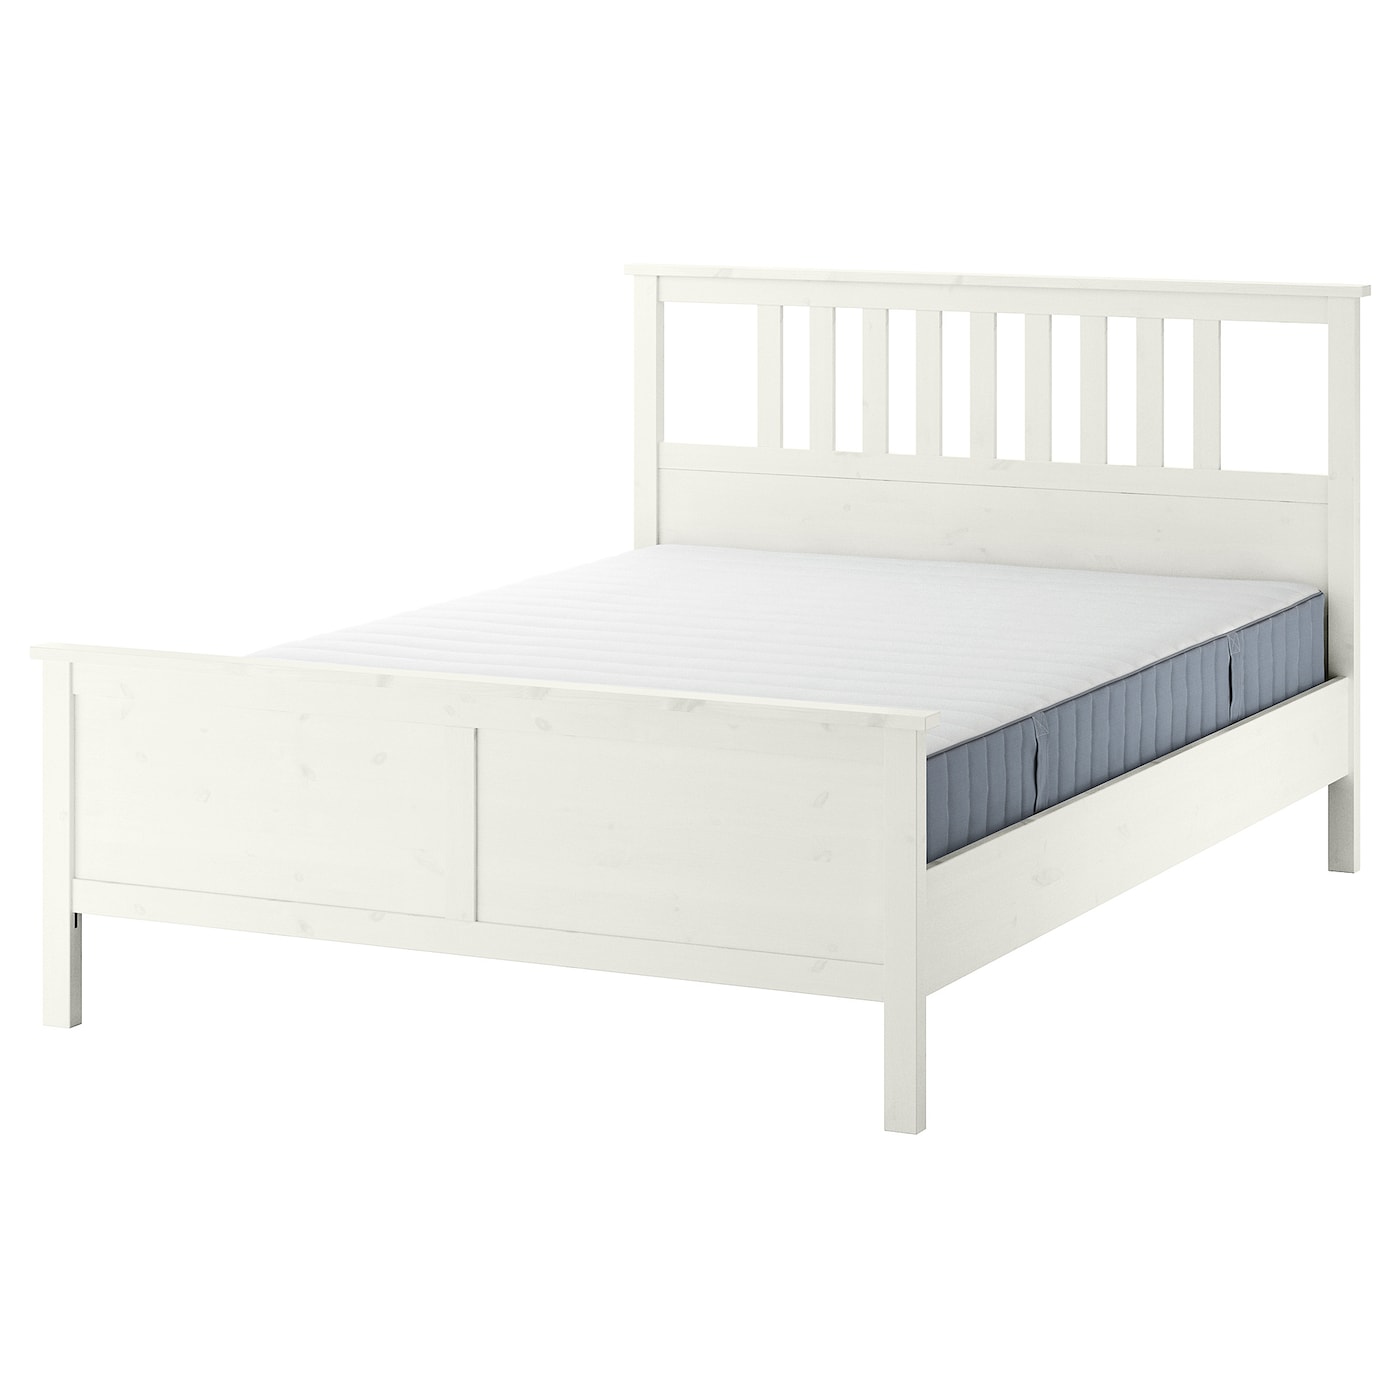 Кровать - IKEA HEMNES, 200х160 см, матрас средней жесткости, белый, ХЕМНЭС ИКЕА